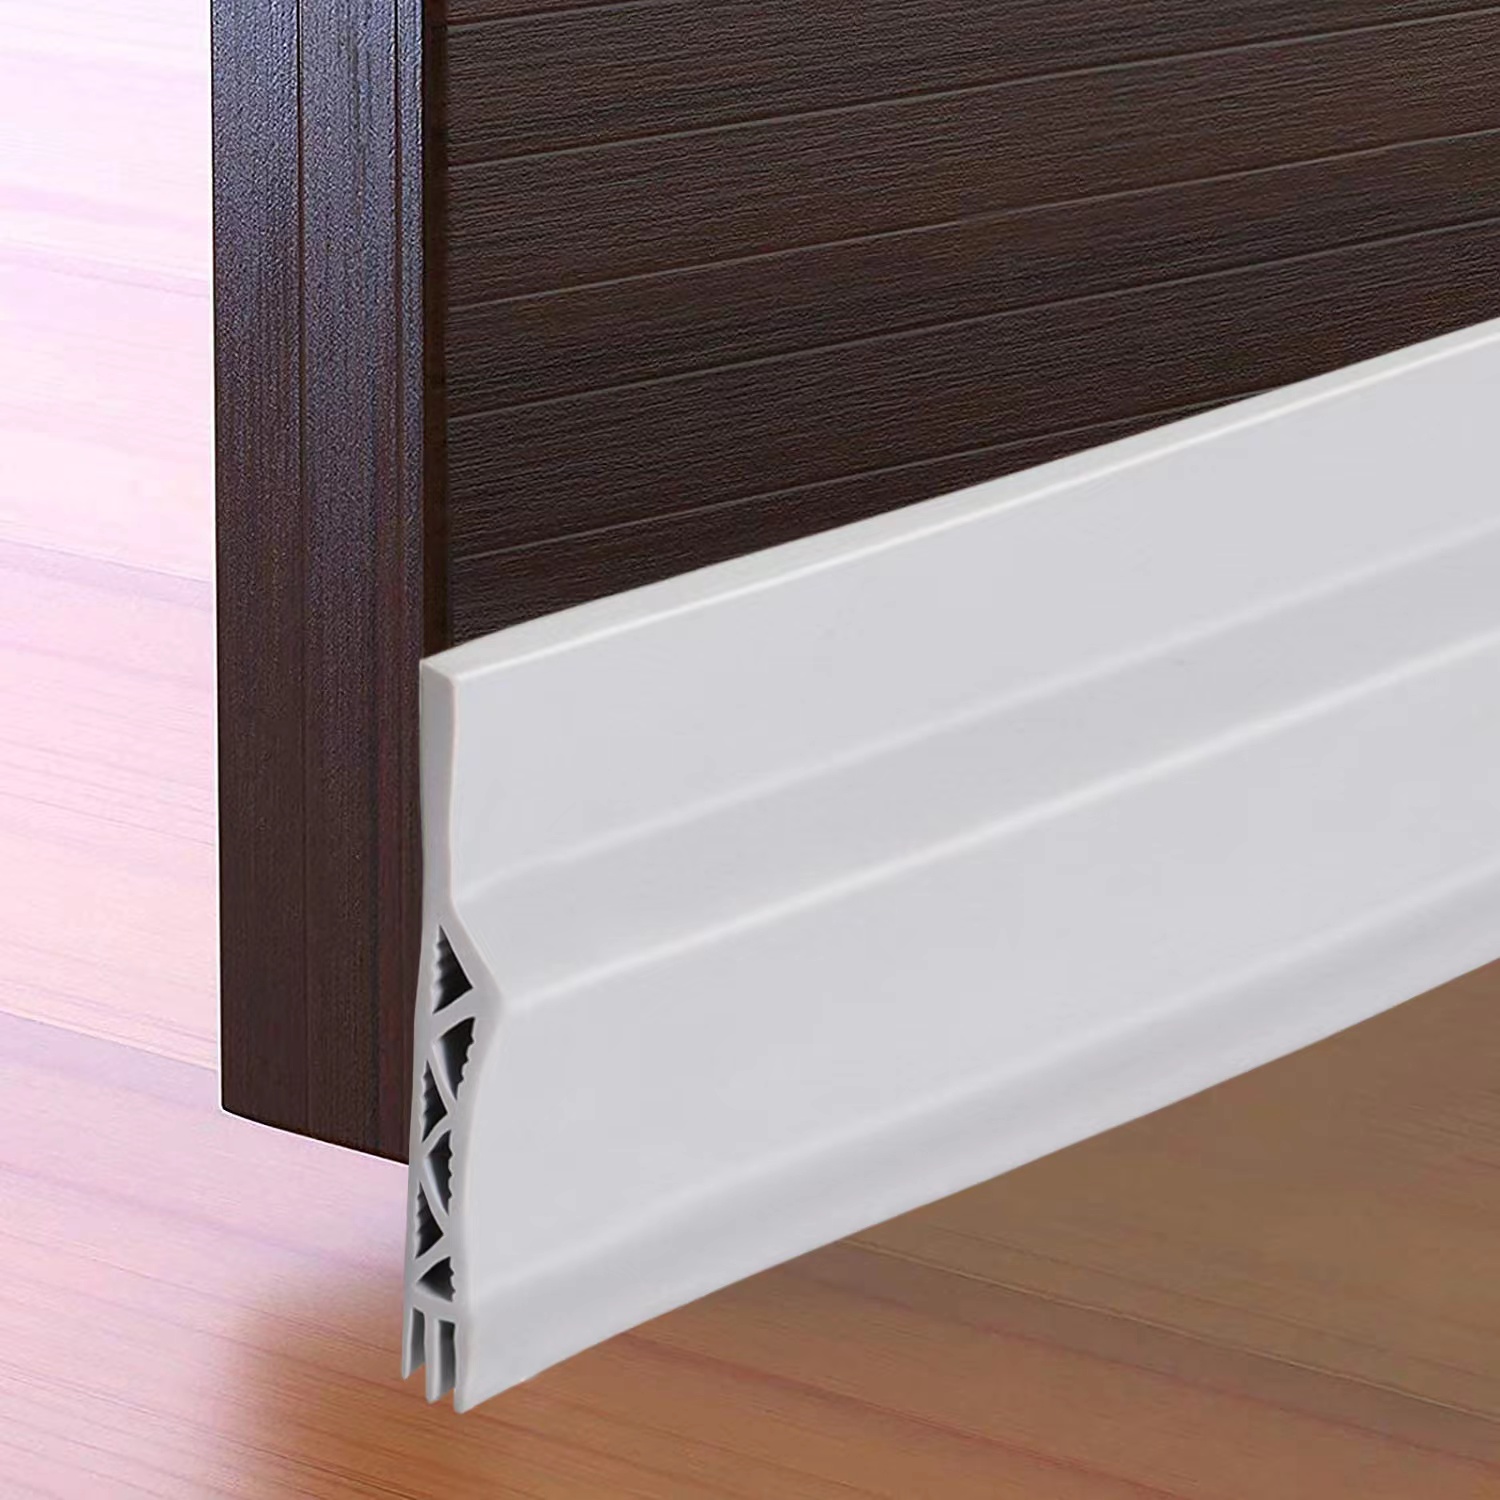 Bas de porte anti-courant d'air & étanchéité porte (1 x blanc)- NOUVEAU bas  de porte isolant (rapide à installer), idéal pour l'isolation contre le  froid, le bruit & l'humidité 